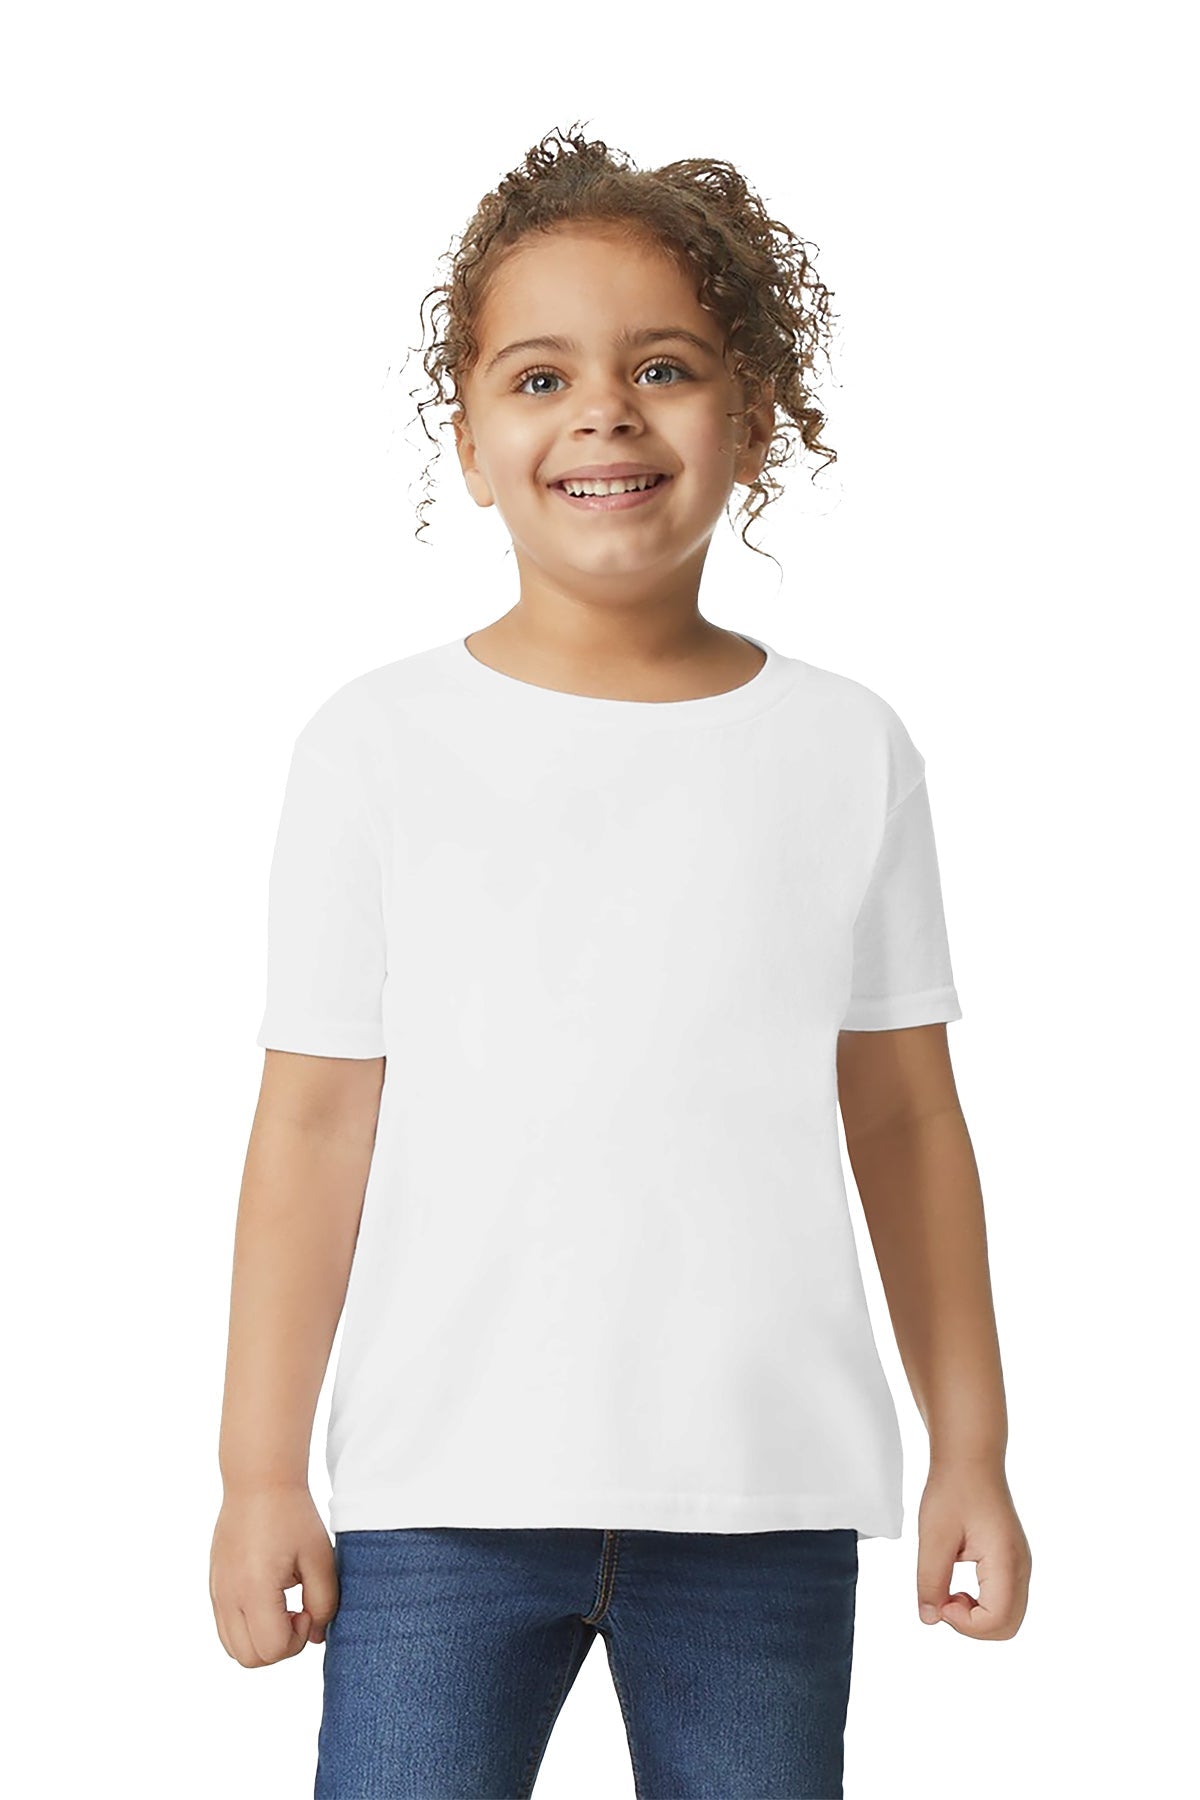 Gilden 5100P Toddler T-Shirt 3T / White